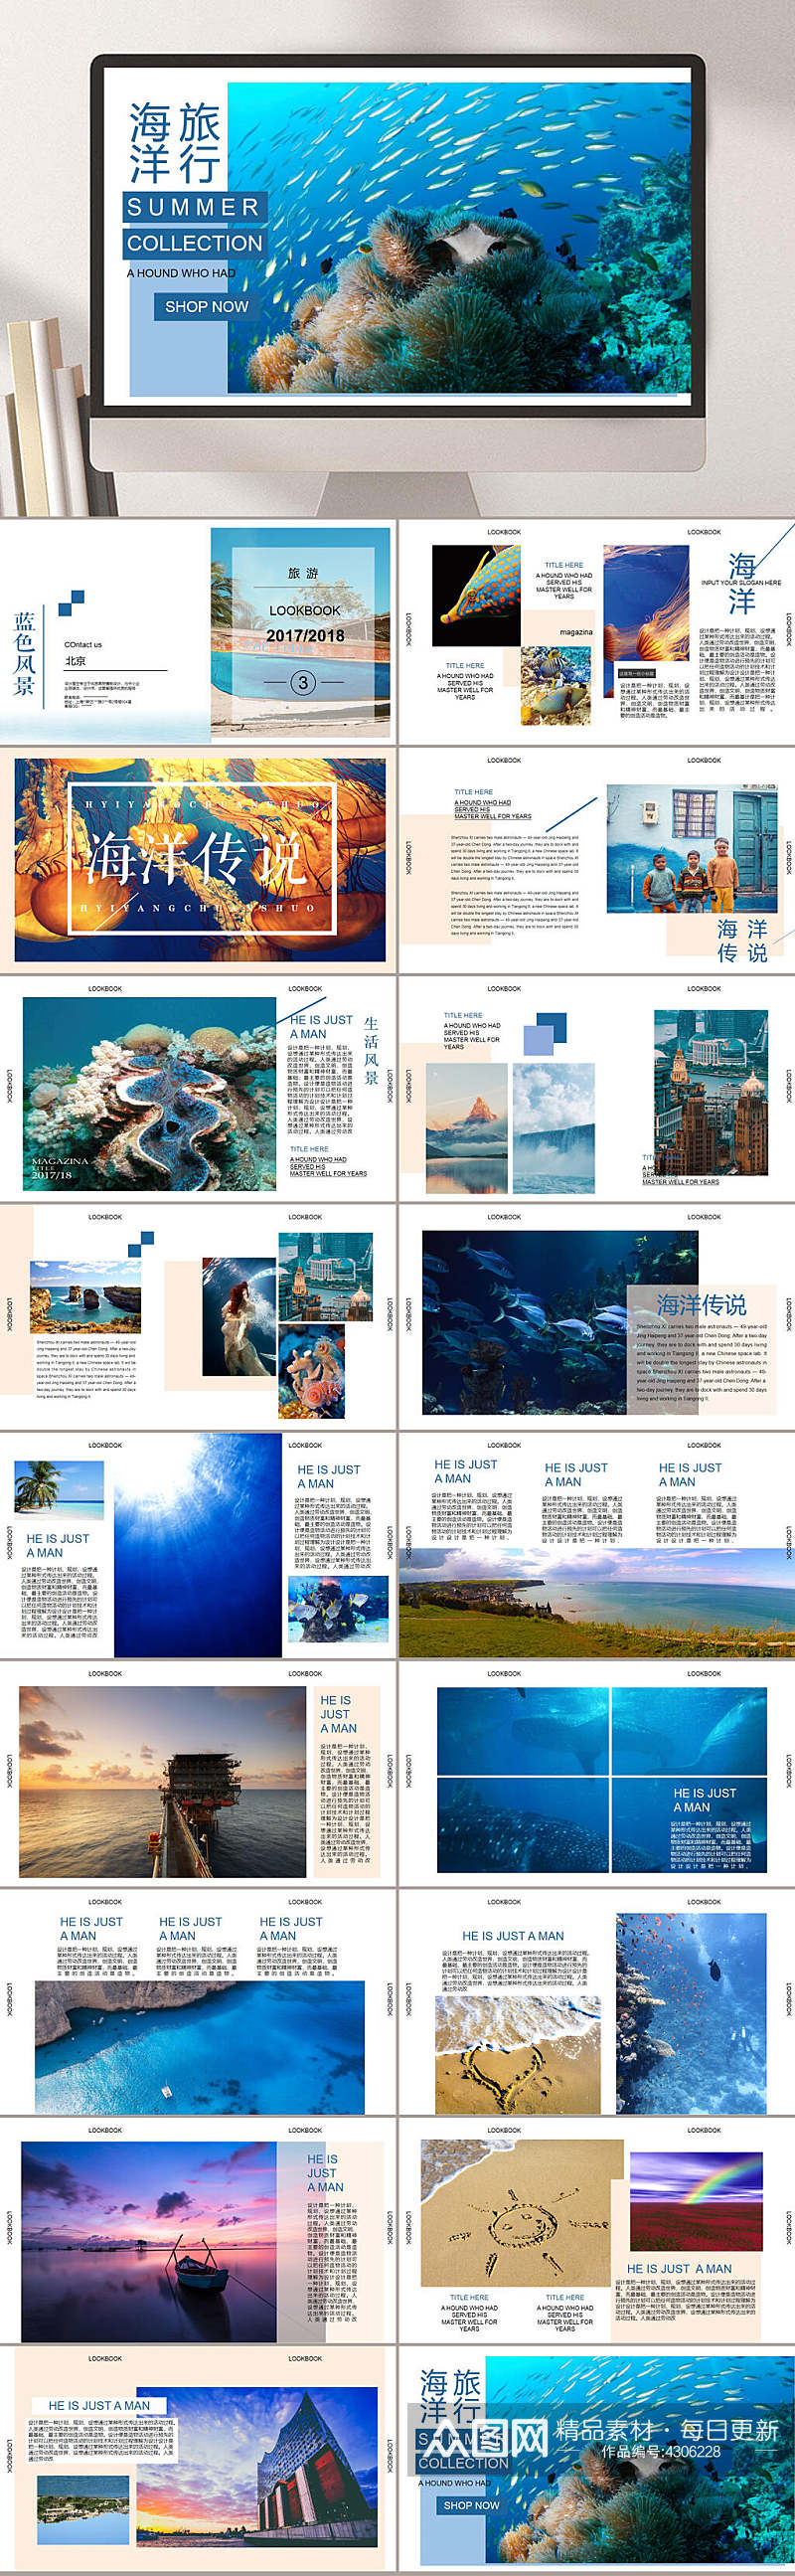 海洋传说深海鱼群珊瑚旅行画册PPT素材